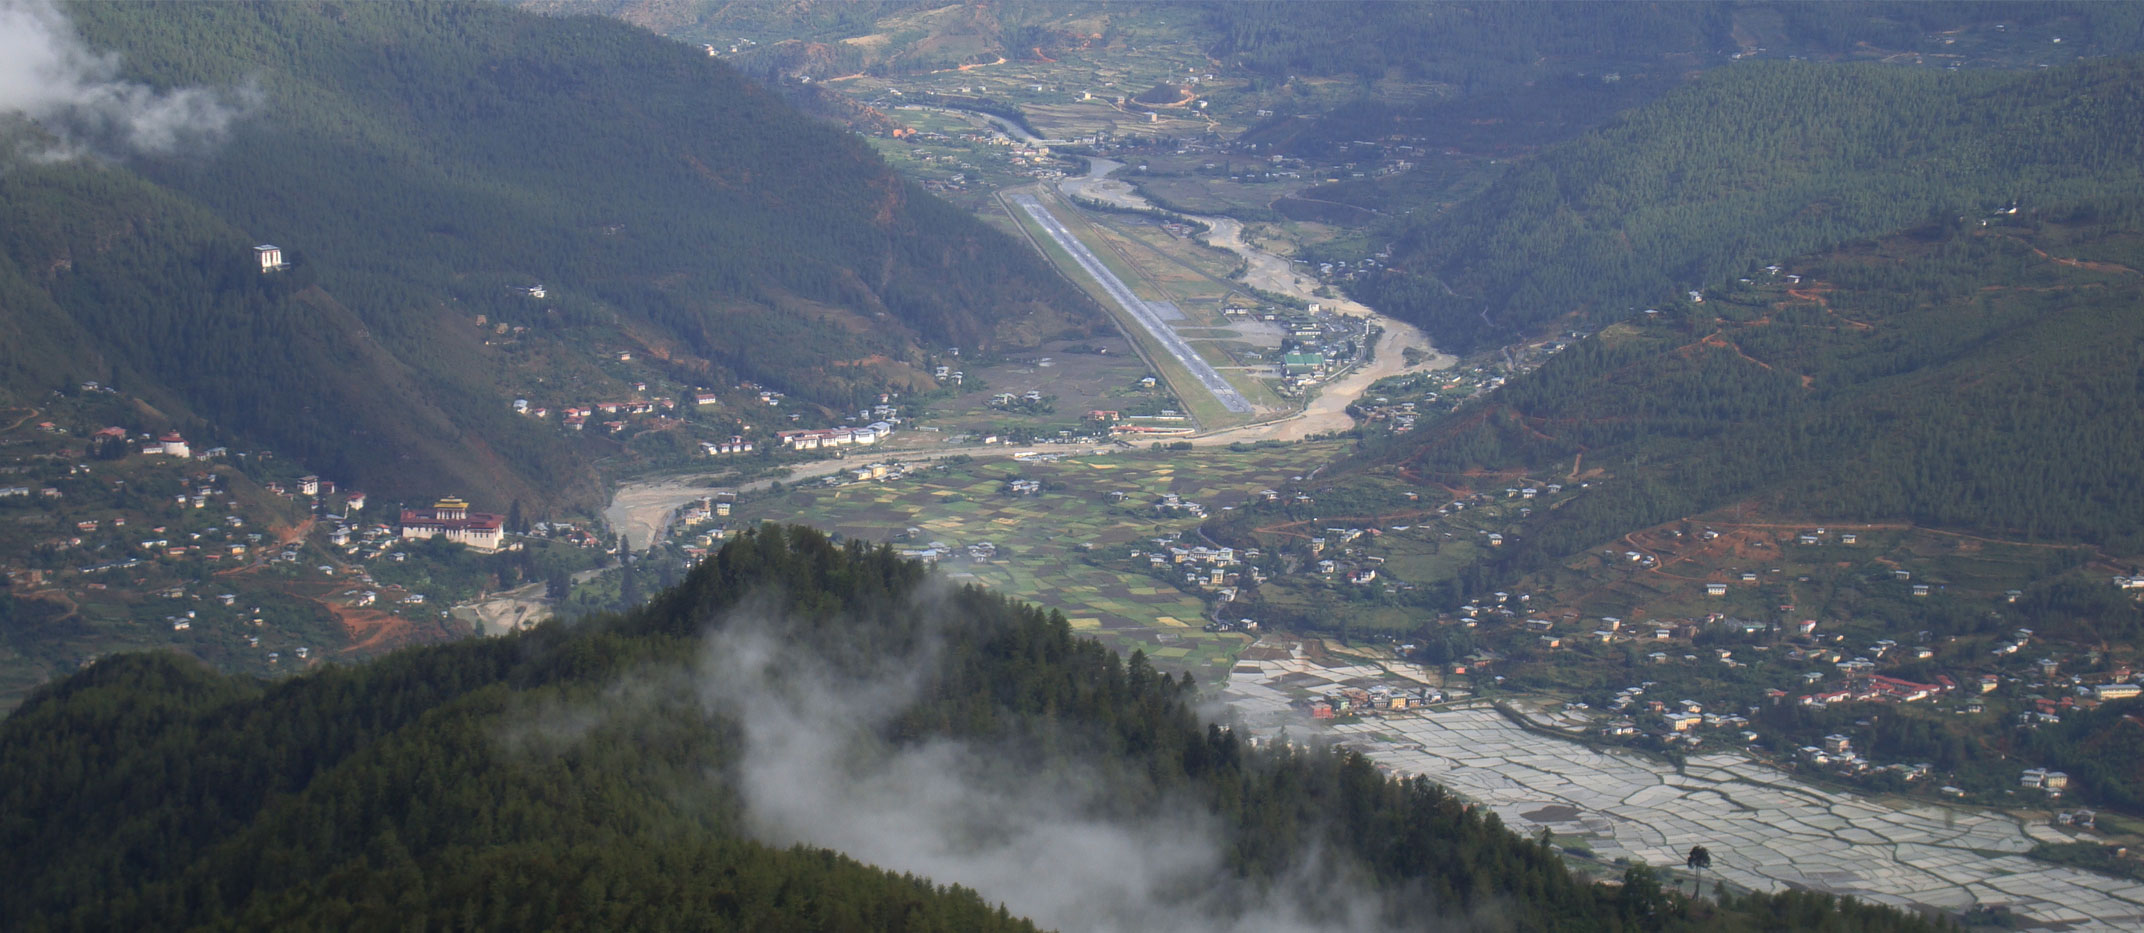 Paro International Airport View, Bhutan